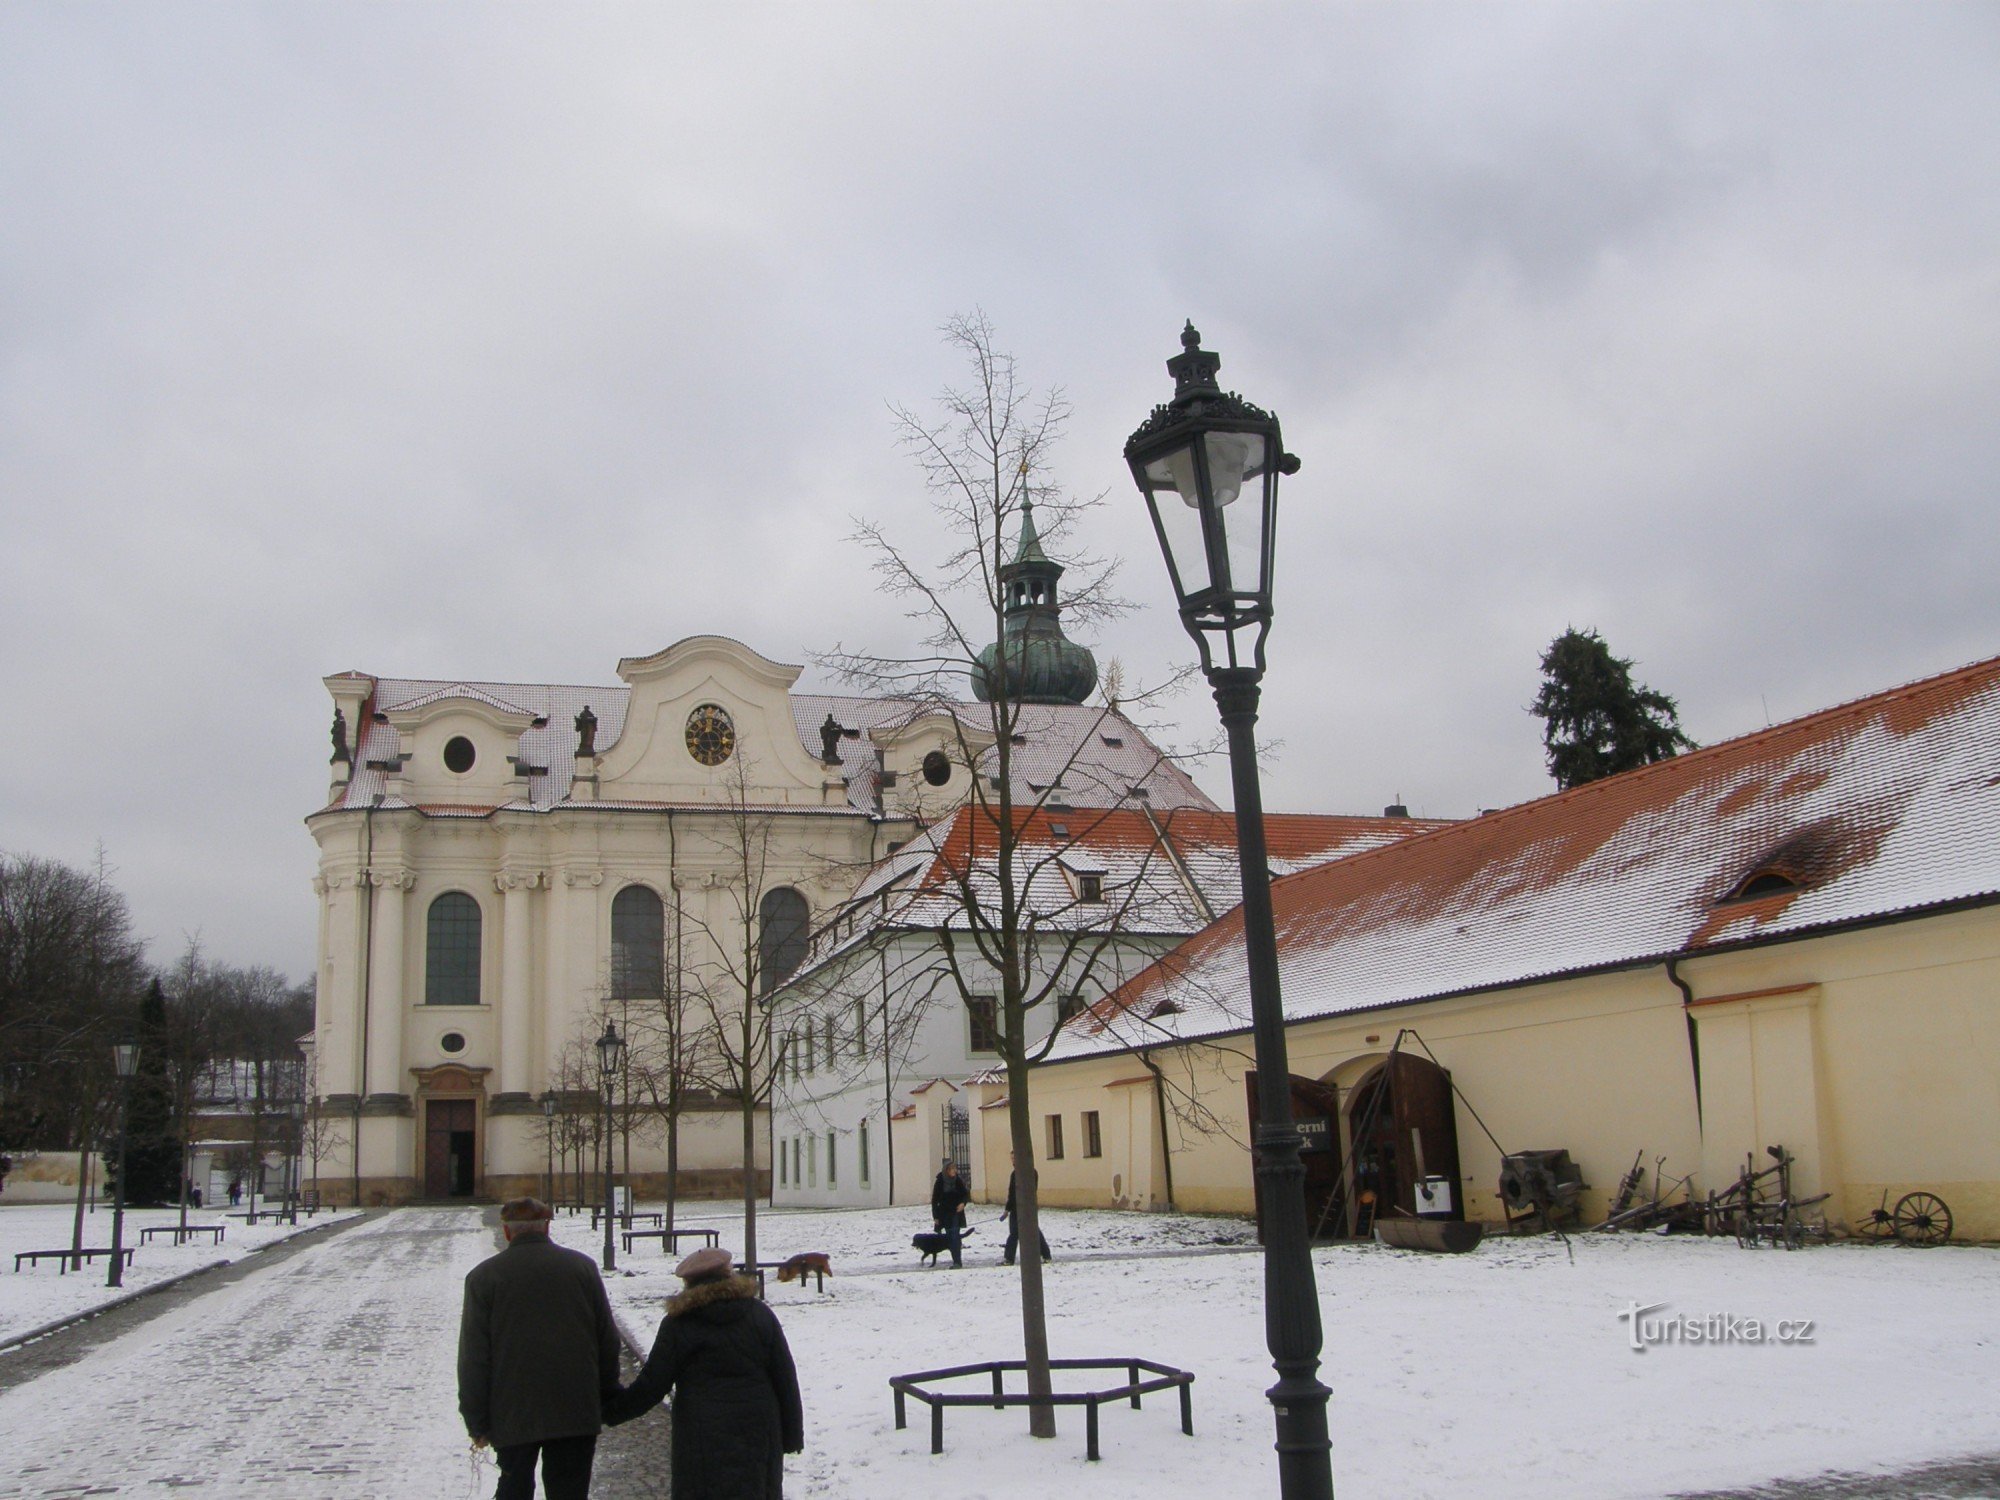 Бржевновський монастир – це оазис спокою посеред великого міста